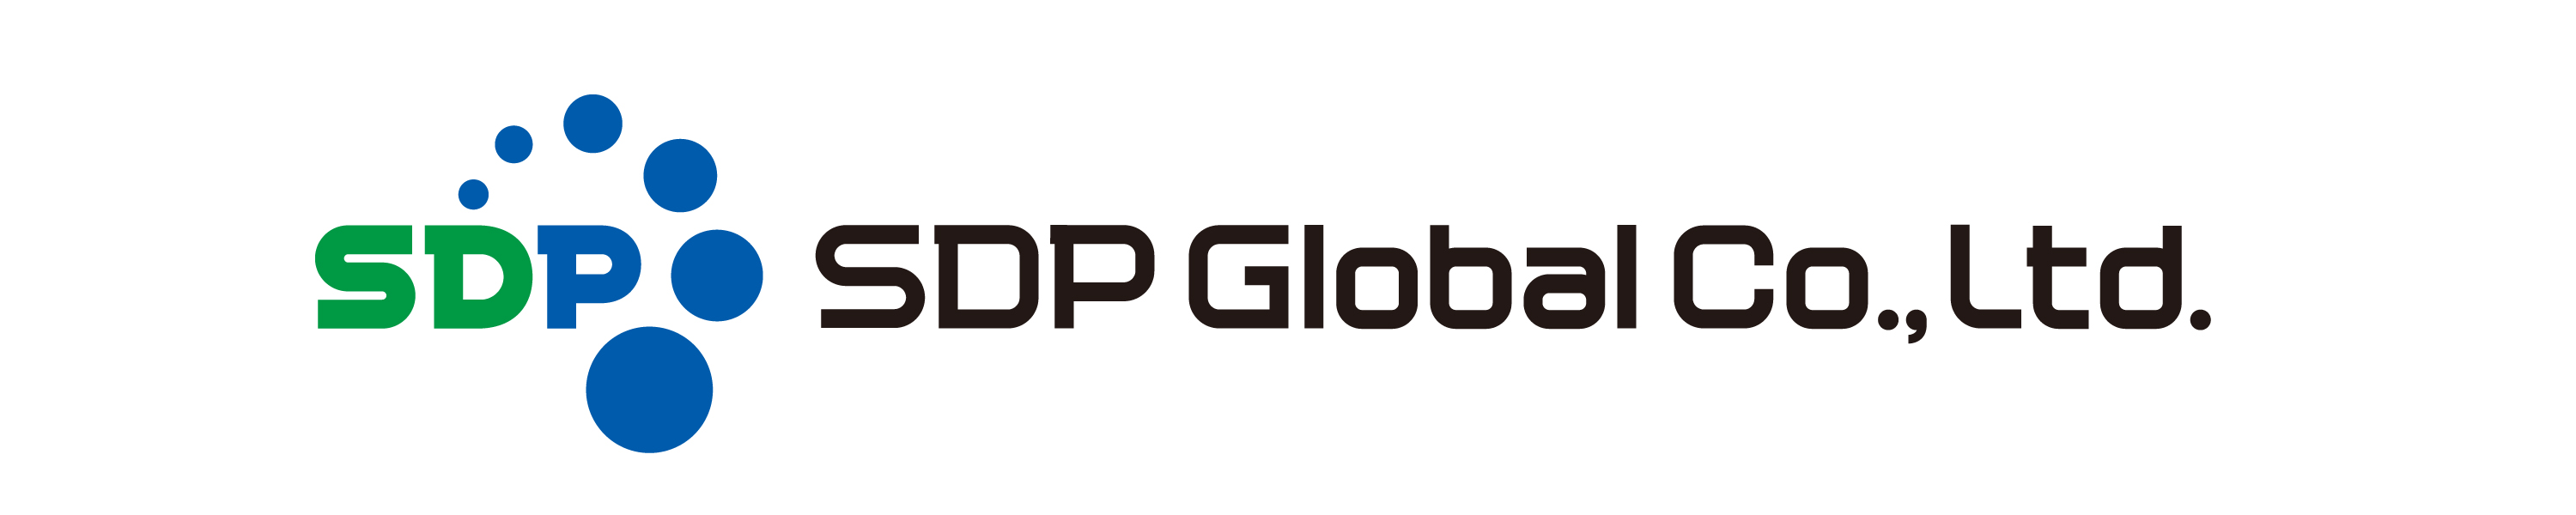 SDP Global Co., Ltd.